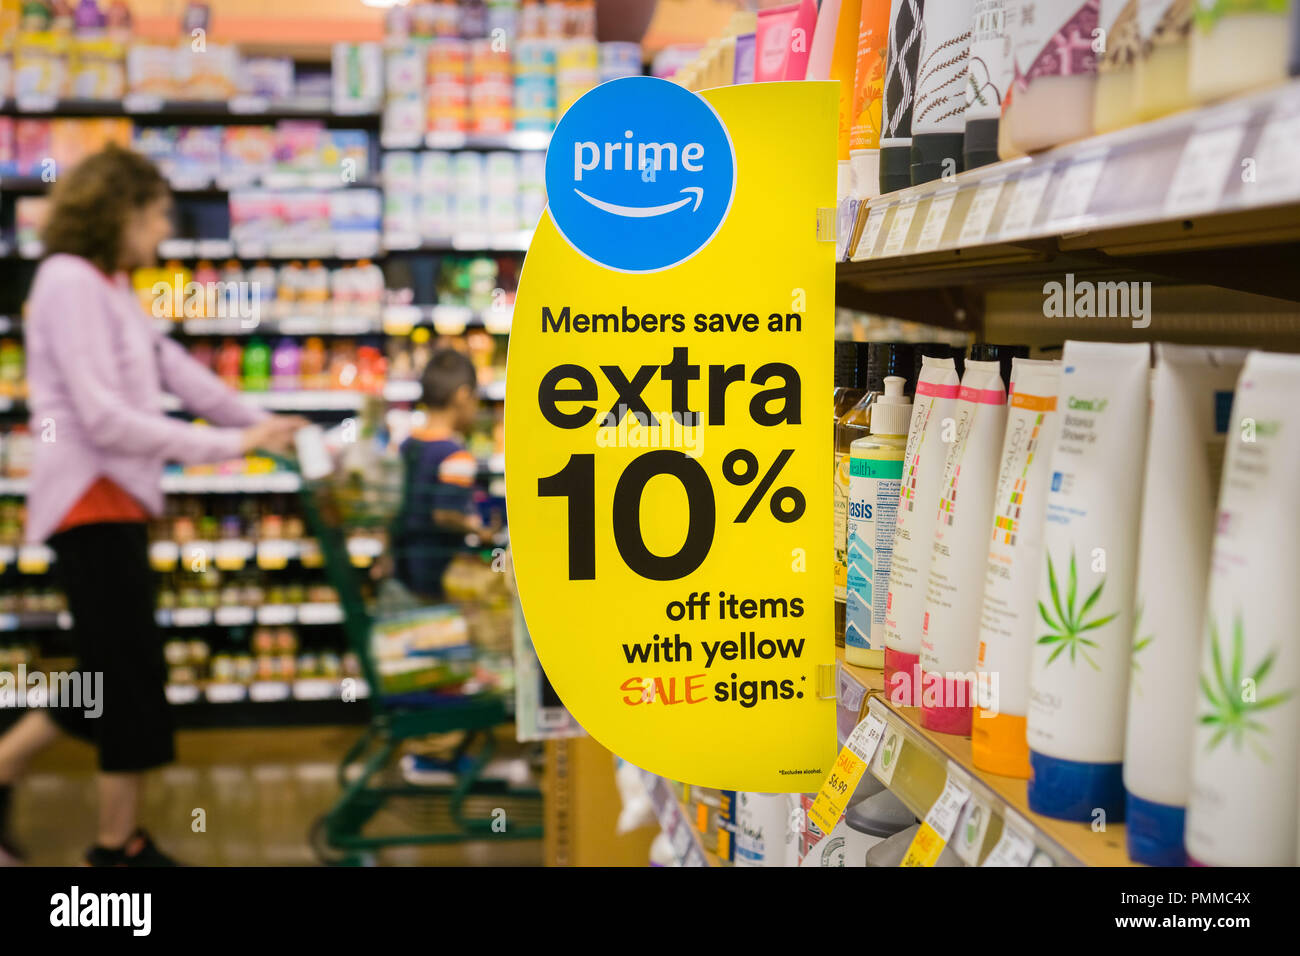 August 30, 2018 Los Altos/CA/USA - Werbung Sign, dass Amazon bietet  zusätzliche Rabatte für Prime Mitglieder im Whole Foods Stores  Stockfotografie - Alamy